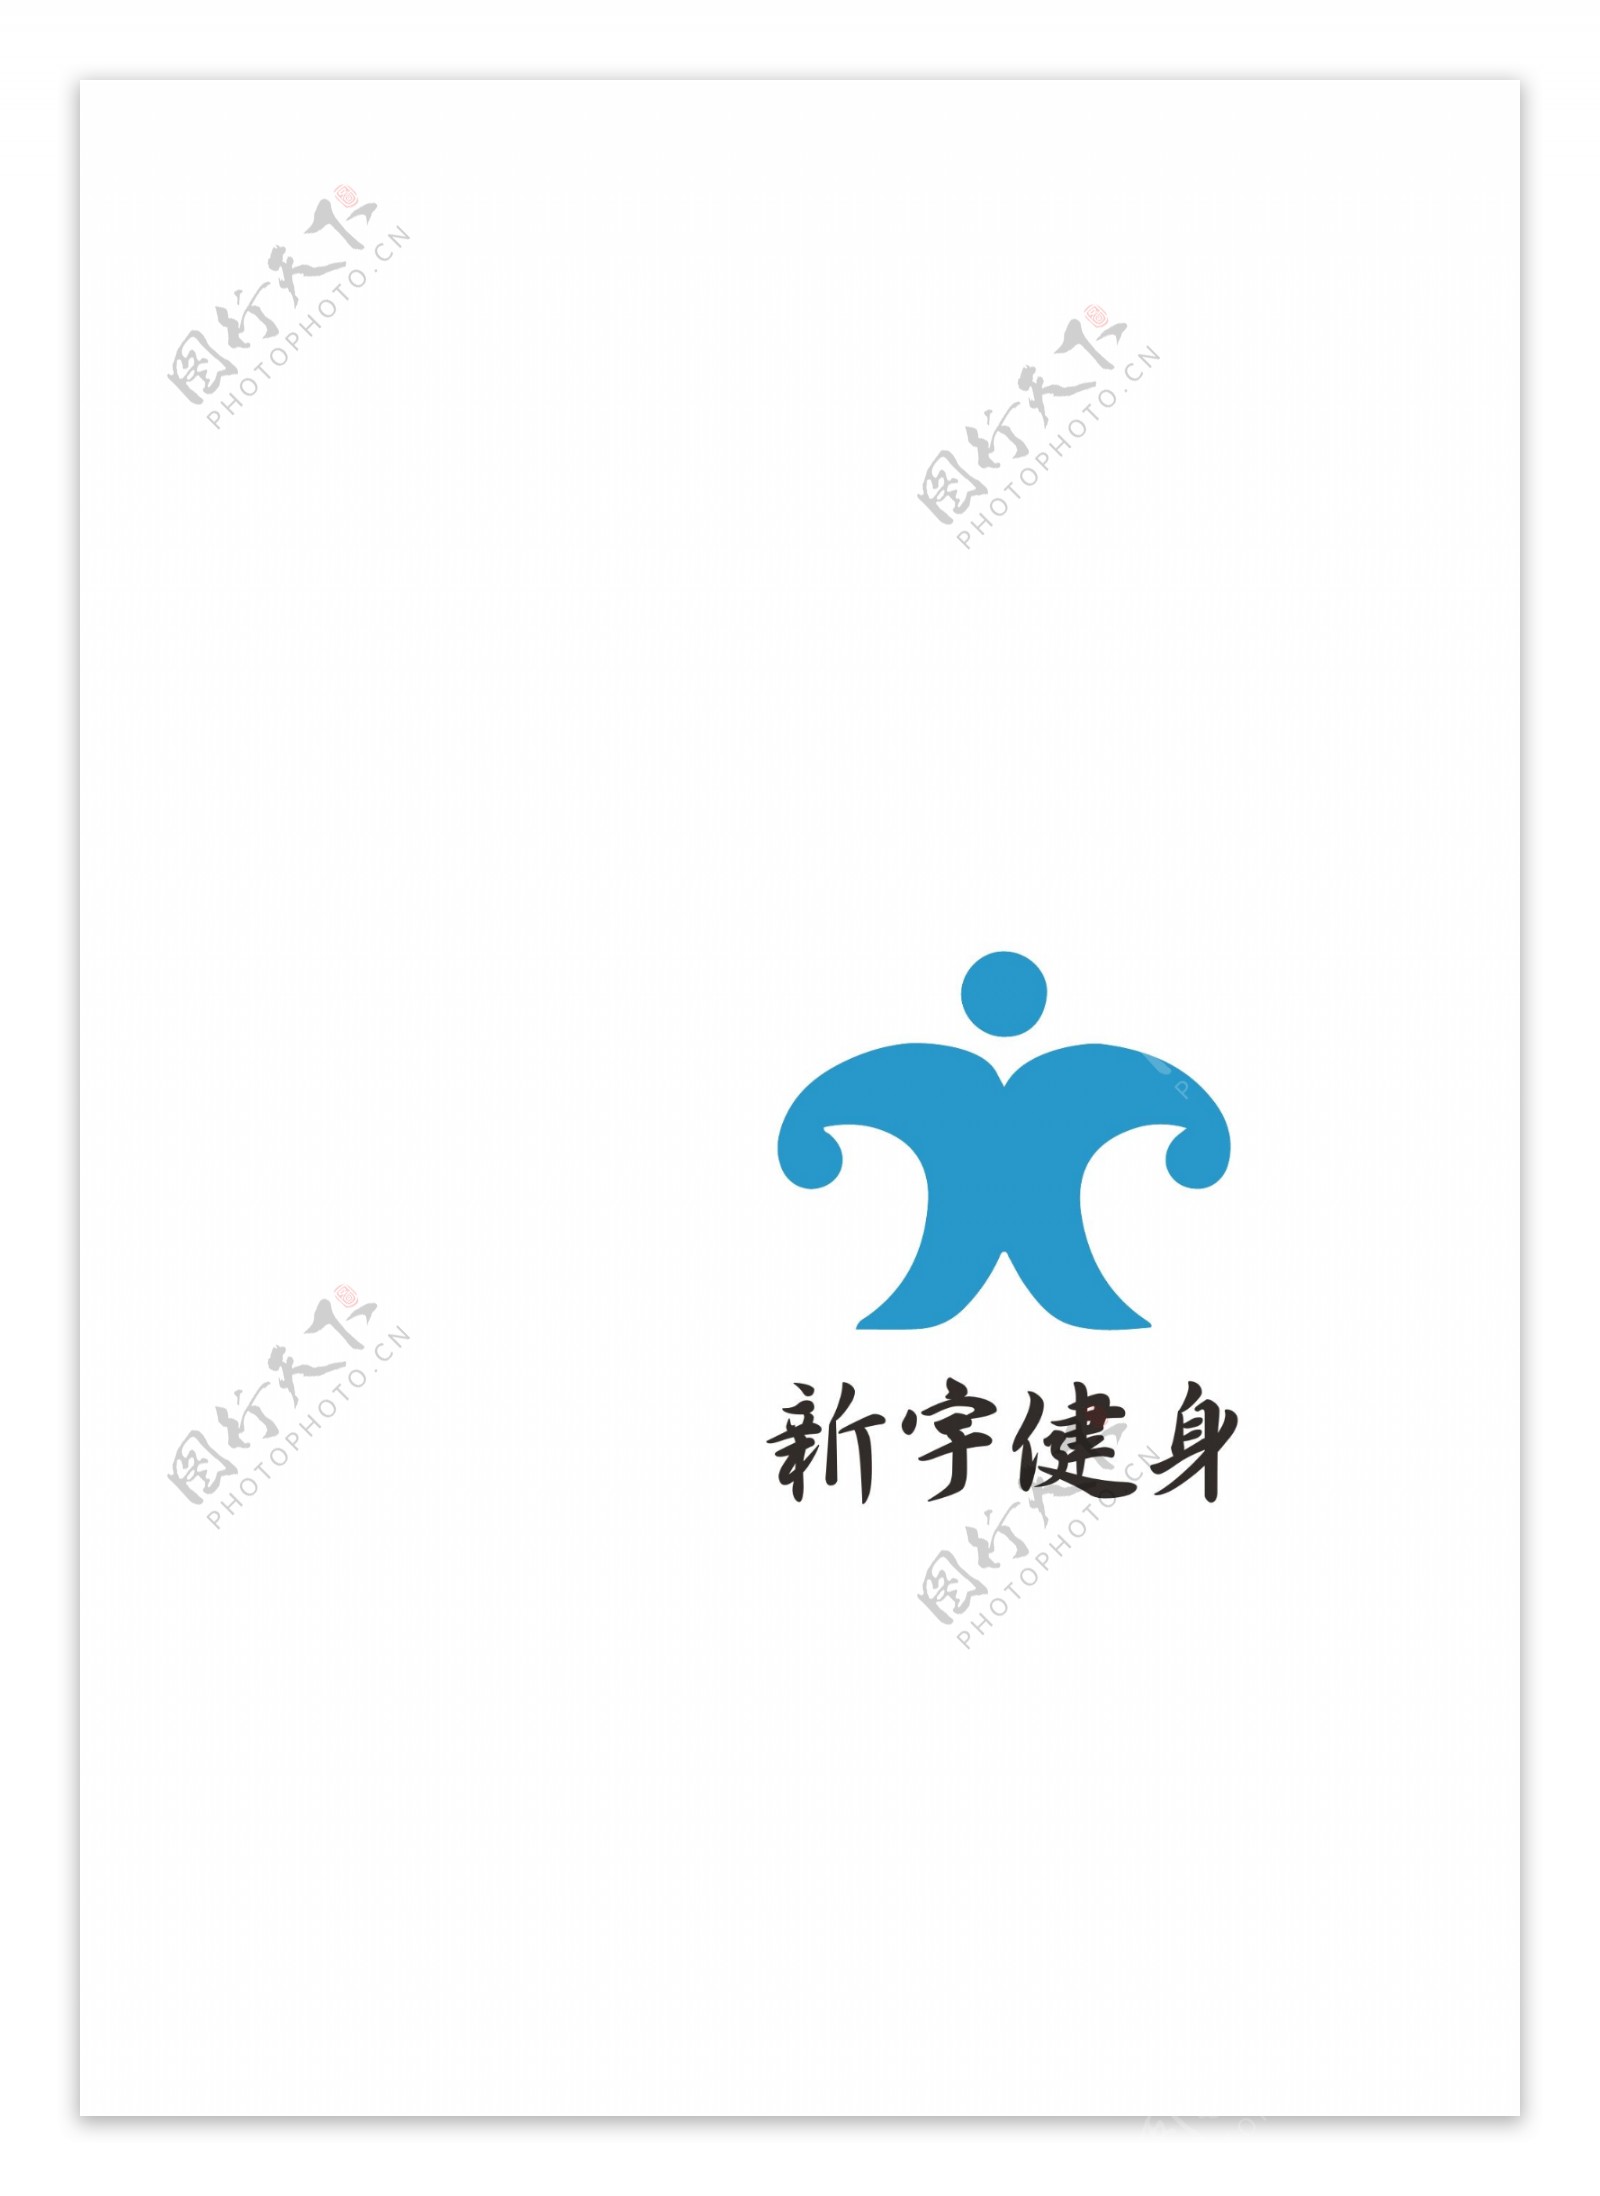 新宇健身logo